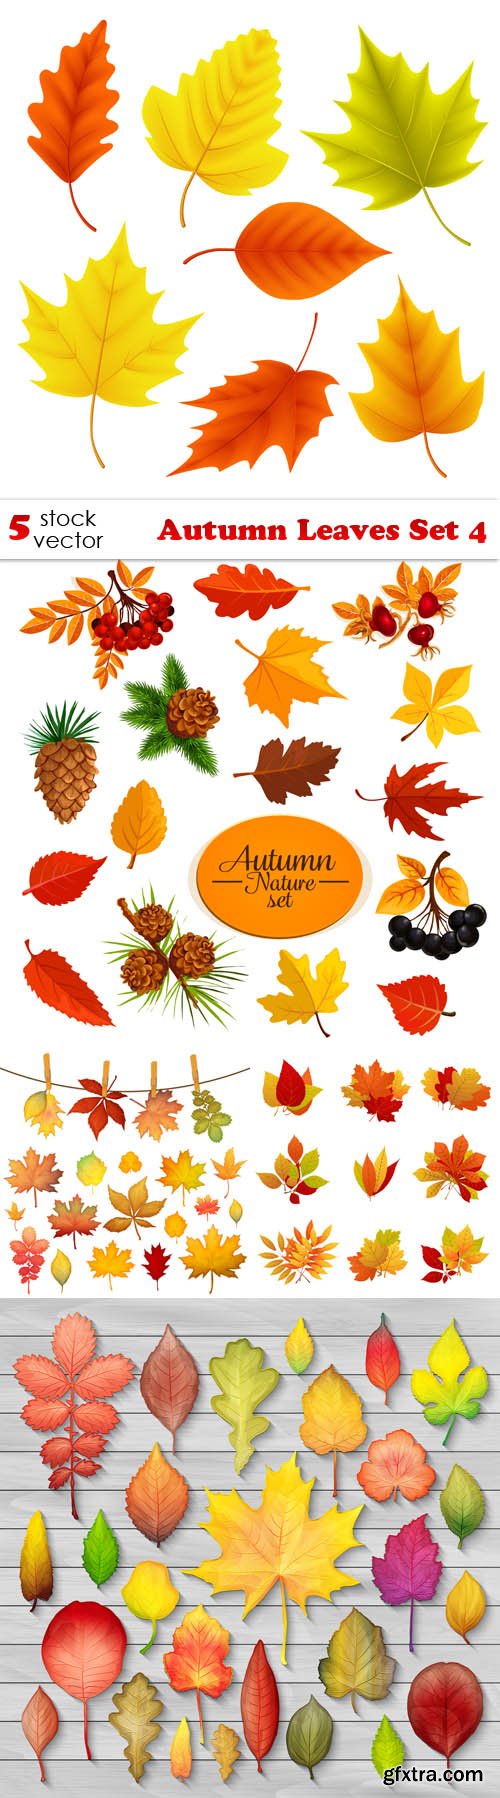 Vectors - Autumn Leaves Set 4